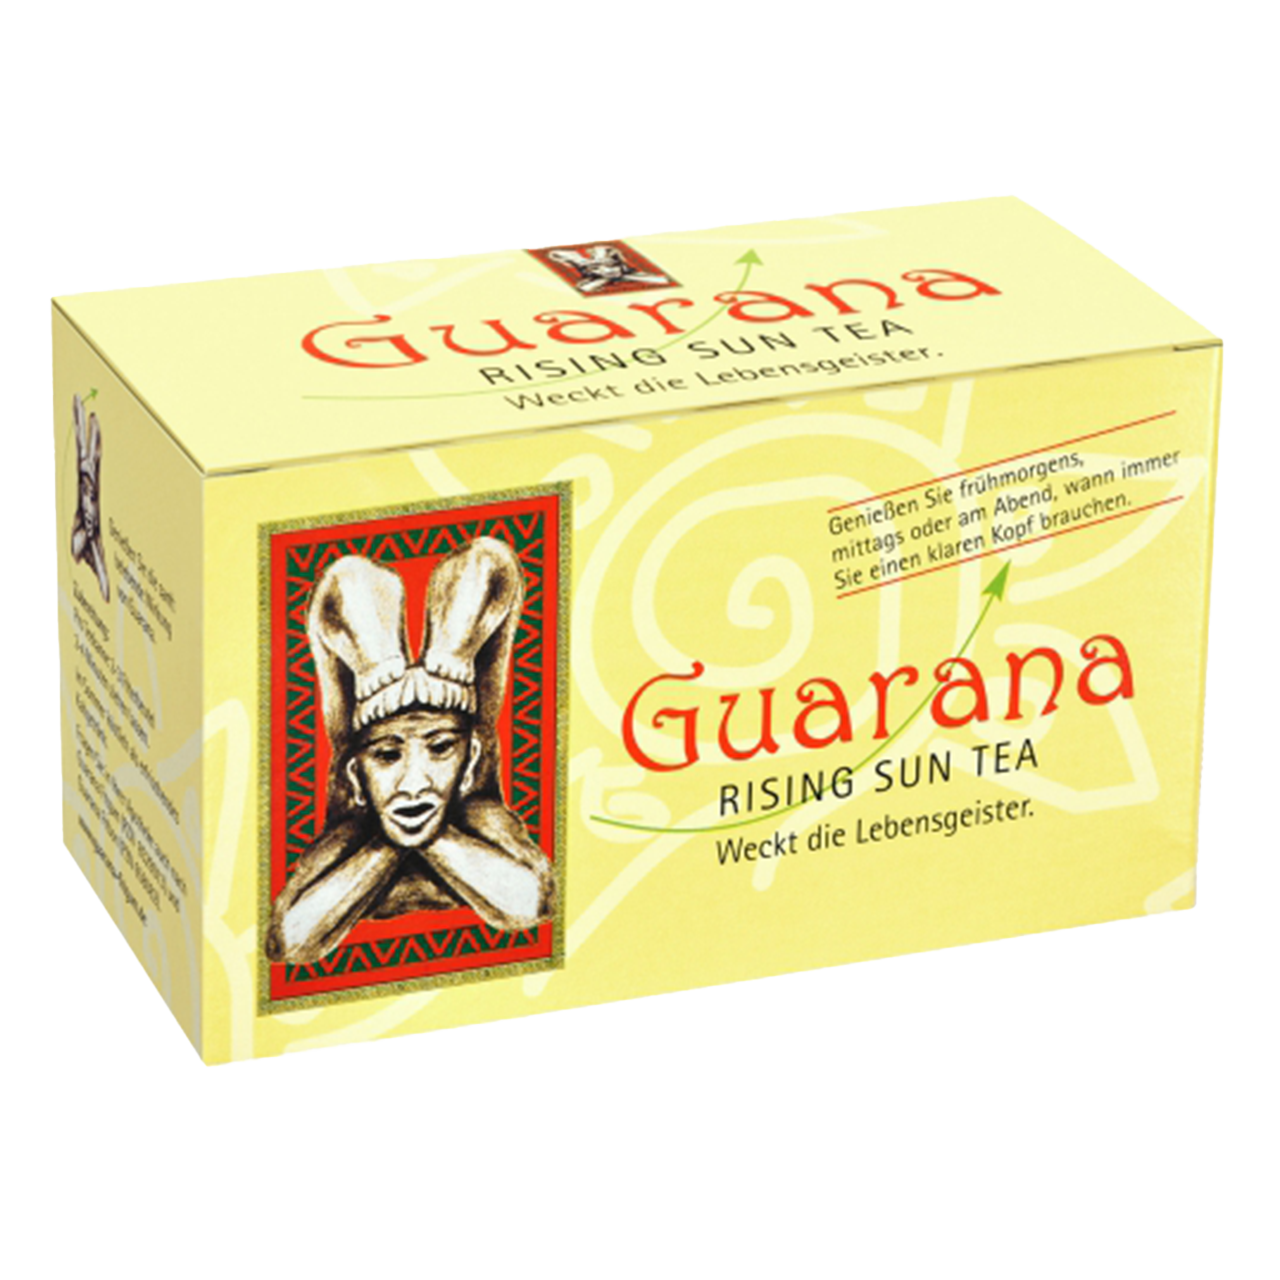 Baders Guarana Rising Sun Tea